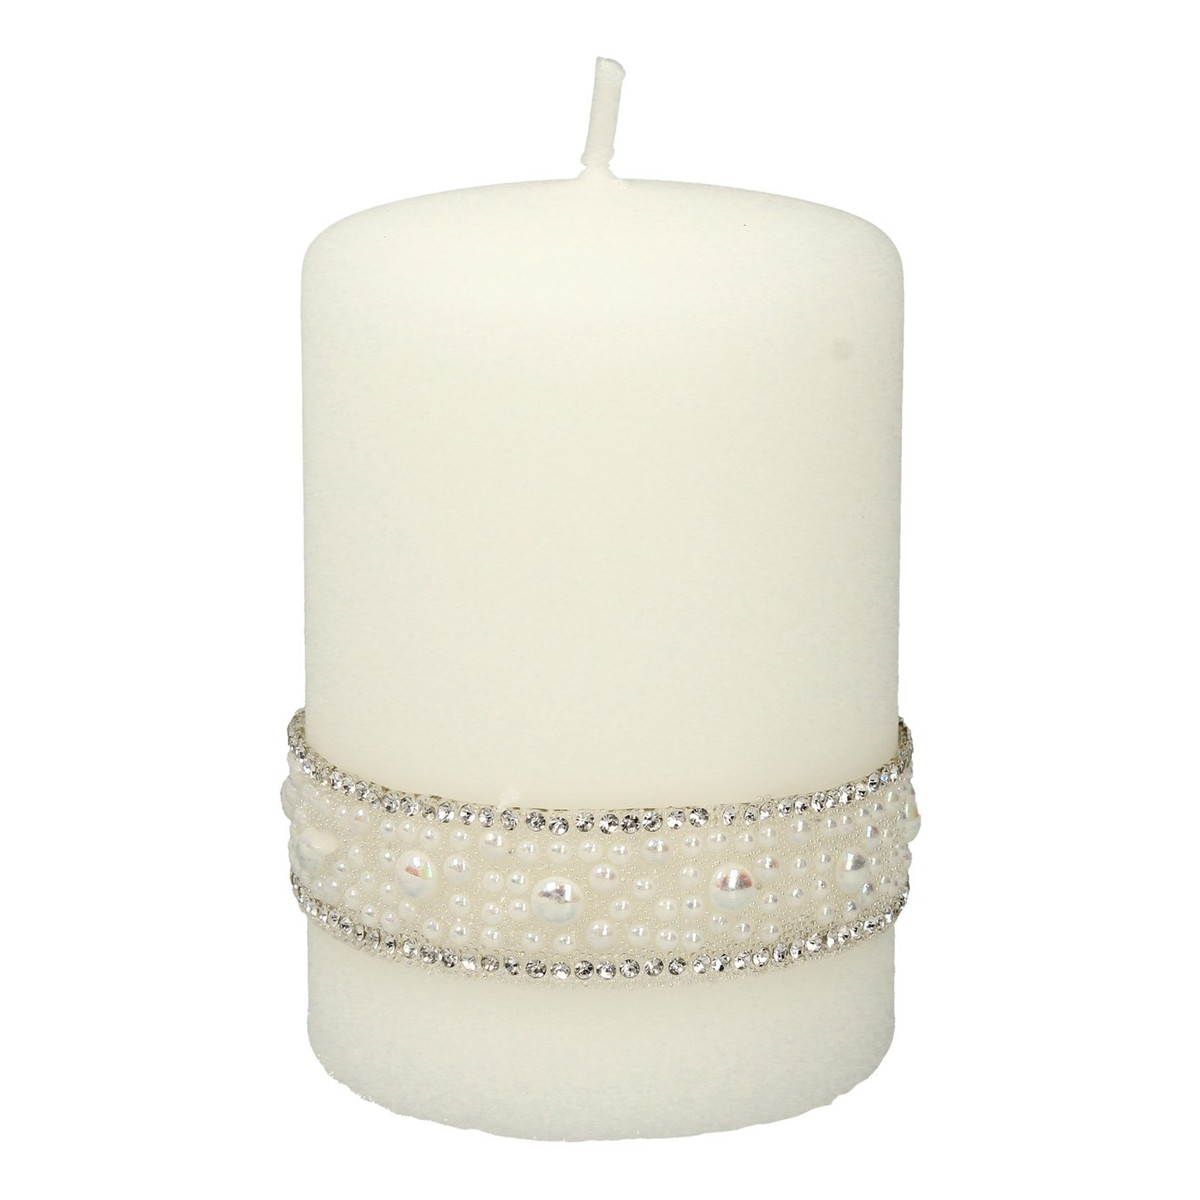 Artman Candles Świeca ozdobna Crystal Pearl biała - walec mały